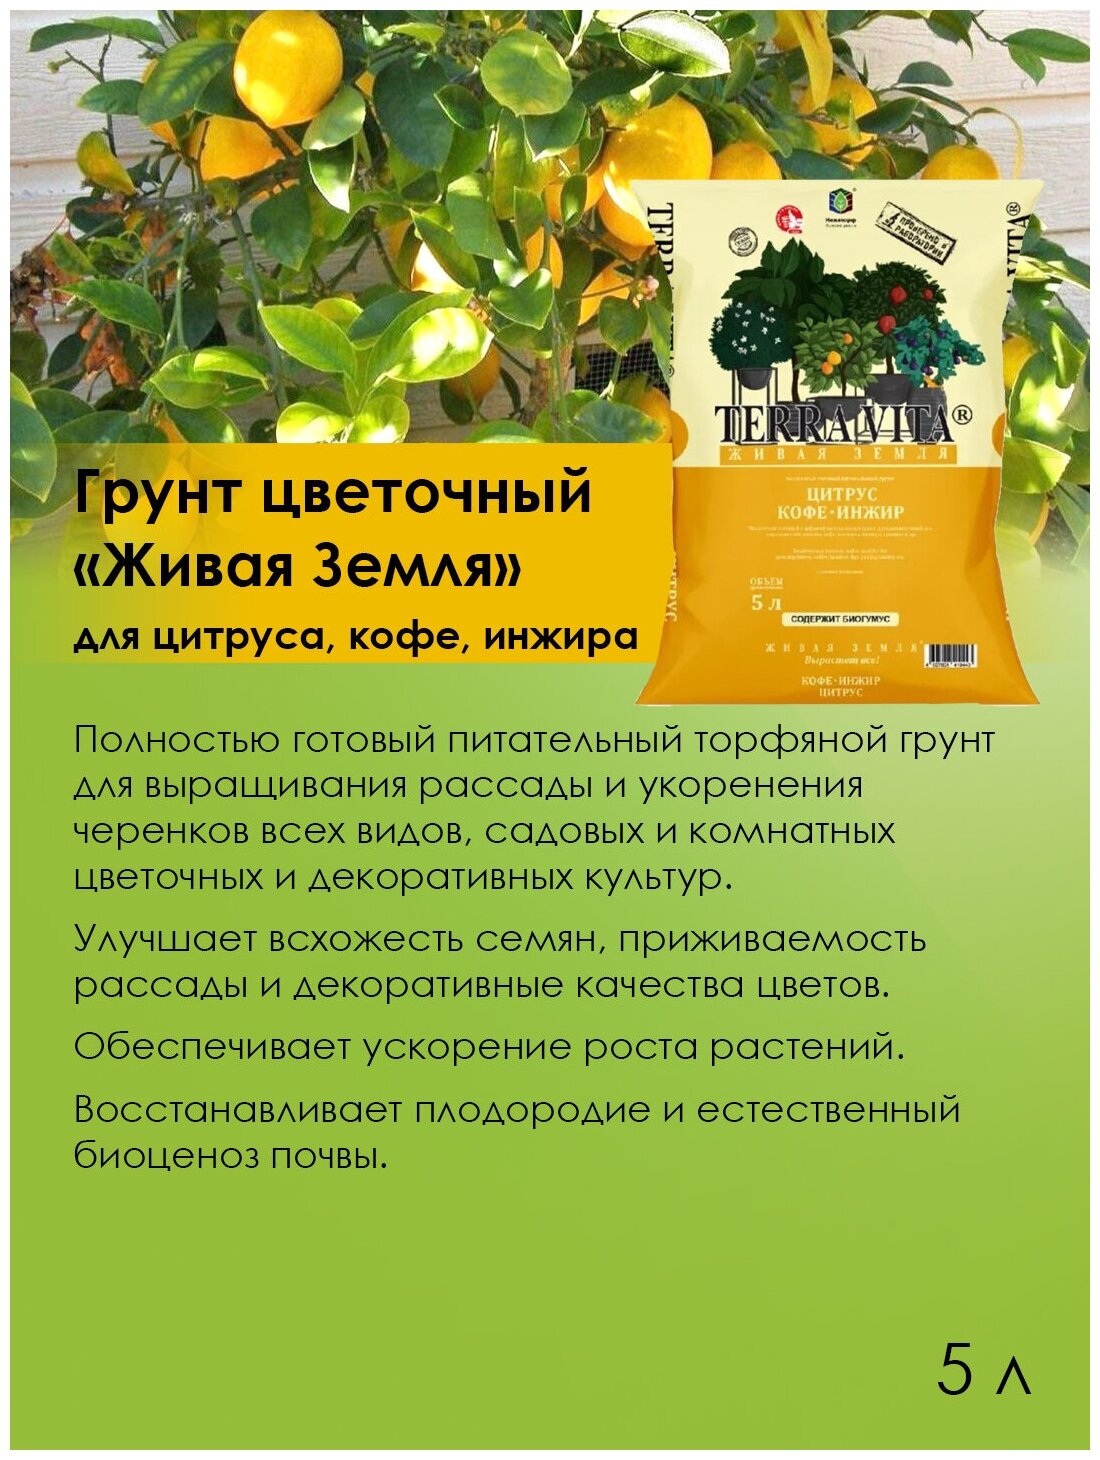 Terra Vita / Грунт питательный для цитрусовых растений, кофе и инжира, удобрение, дренаж (керамзит) - фотография № 2